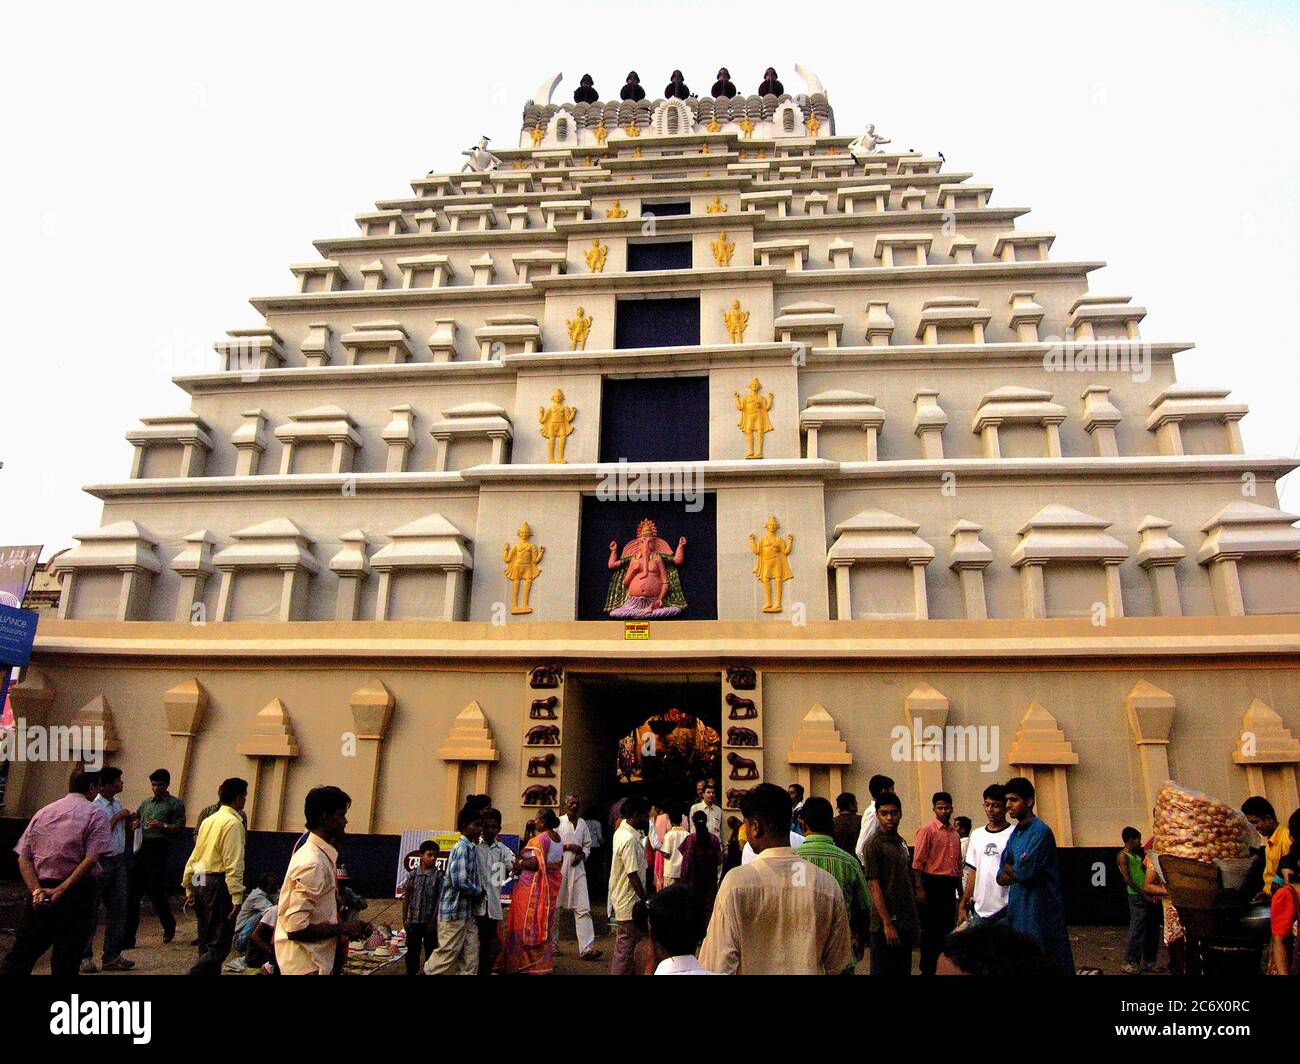 Une structure de fortune, connue localement sous le nom de «pandel», abritant l'autel ou «la pandap» de la déesse Durga, pendant le festival de quatre jours de Durga Puja, à Kolkata, en Inde, en octobre 18,2007. Banque D'Images